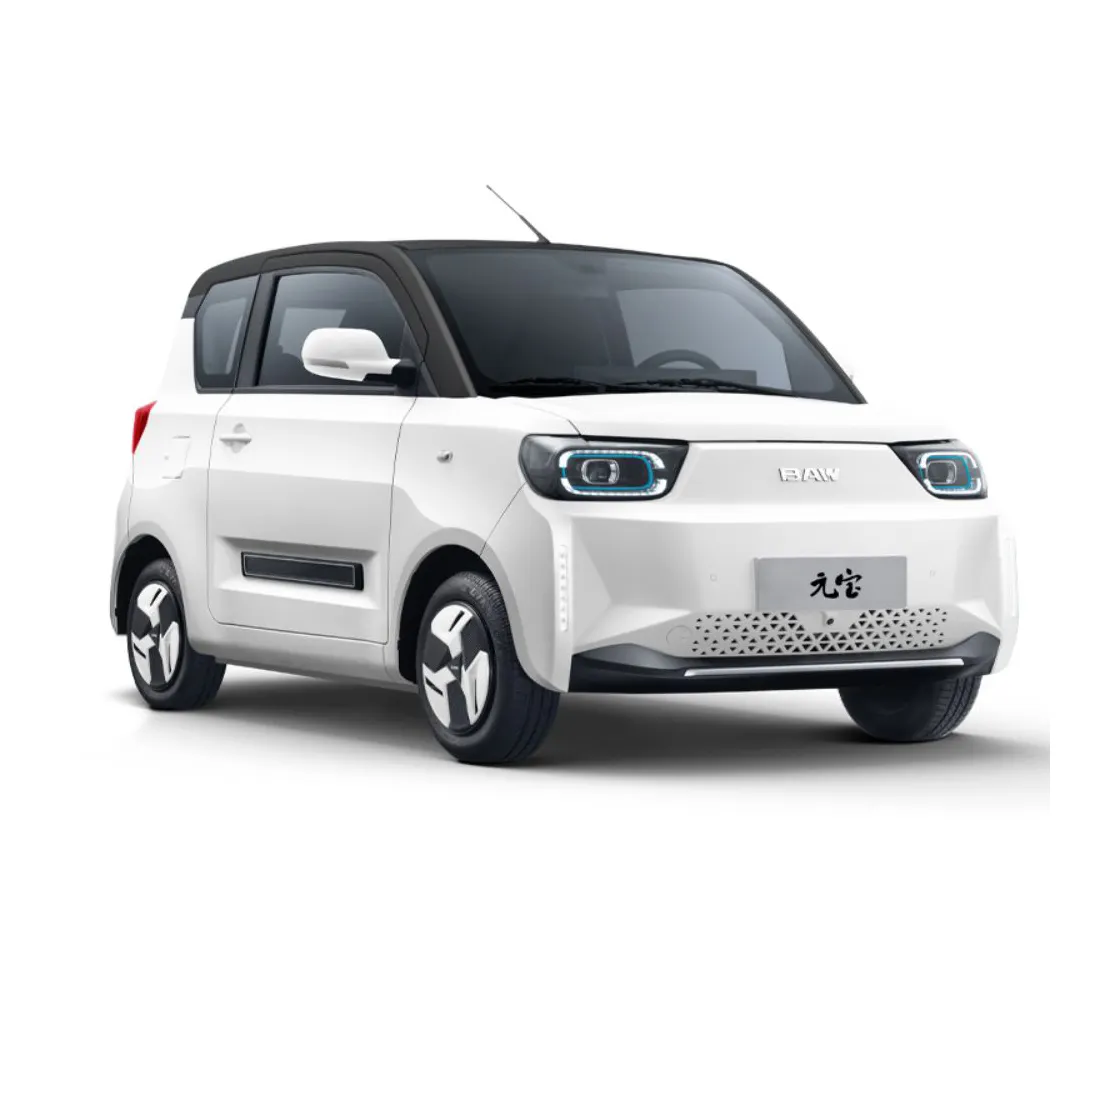 BAW רכב אנרגיה חדש ידידותי למשפחה מכונית עירונית מיני חשמלית באיכות מעולה עם ביצועי בטיחות גבוהים TPMS מכונית 4 מושבים